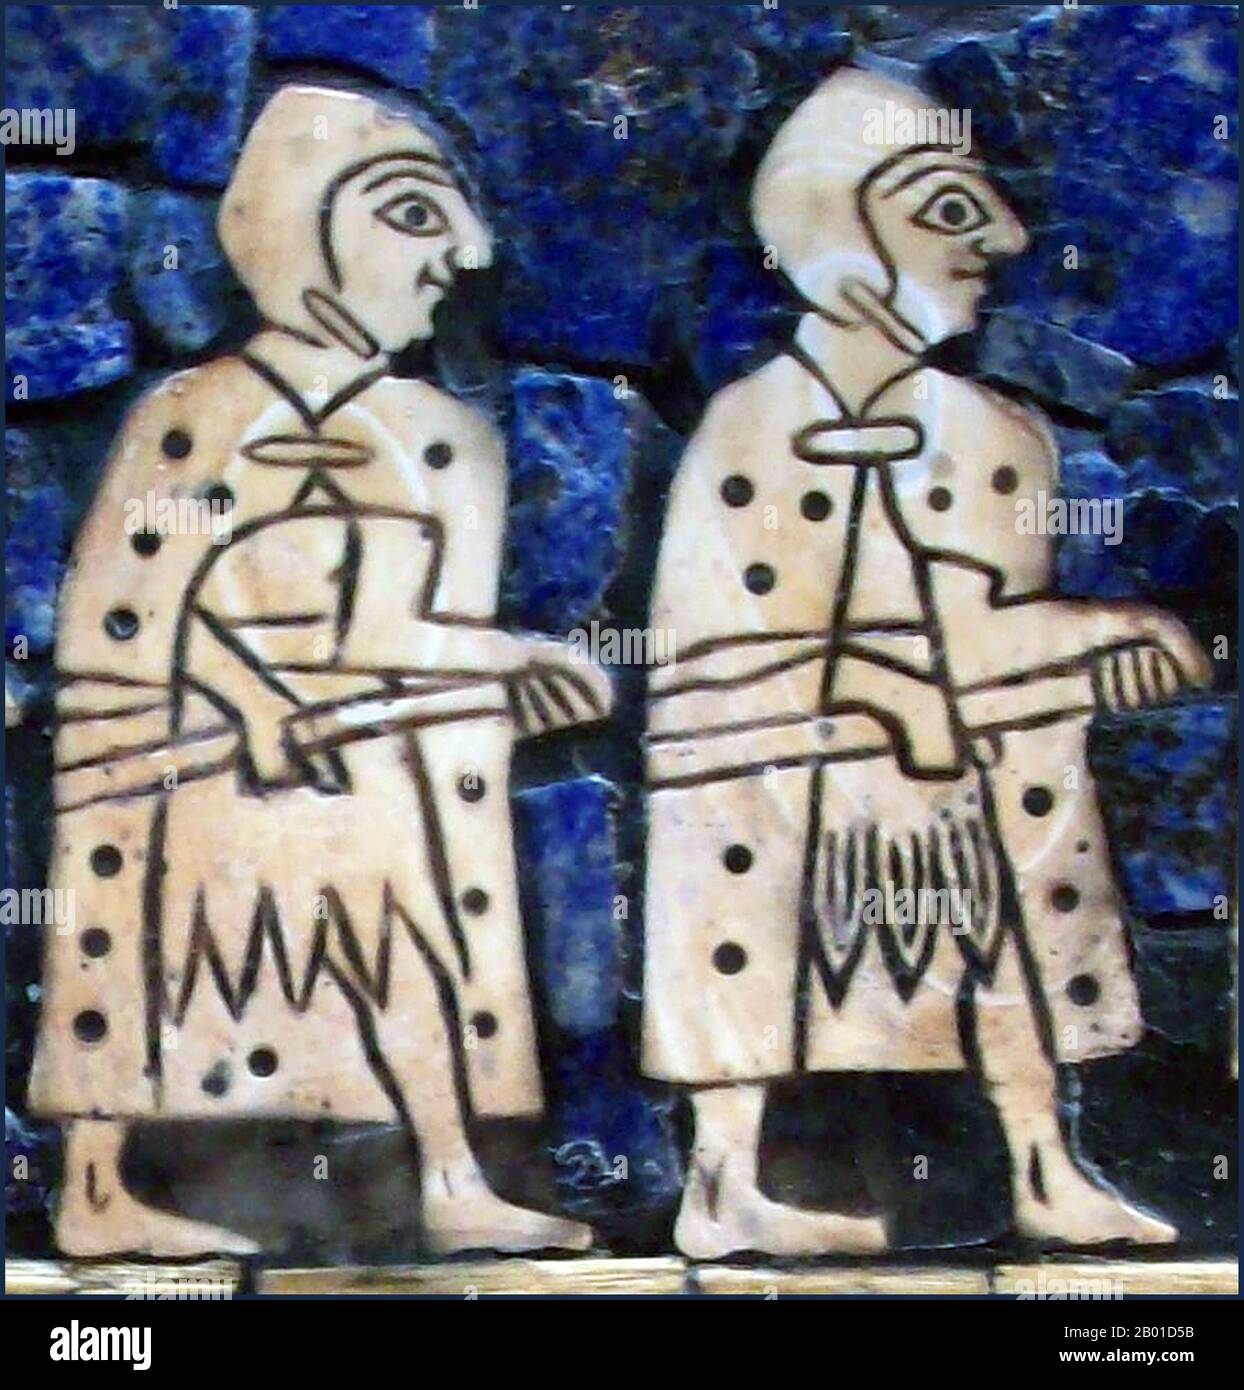 Irak : détail du côté guerre du Standard of ur (également connu sous le nom de « Standard de bataille d'ur », Ou le 'Standard Royal d'ur') représentant deux soldats, un objet sumérien excavé du cimetière royal dans l'ancienne ville d'ur, situé dans l'Irak moderne au sud de Bagdad, c. 2600 BCE. Le Standard d'ur a survécu dans une condition fragmentaire, car les effets du temps au cours des derniers millénaires avaient décimé le cadre en bois et la colle de bitume qui avaient cimenté la mosaïque en place. Le poids du sol avait écrasé l'objet, le fragmentant et cassant les panneaux d'extrémité. Banque D'Images